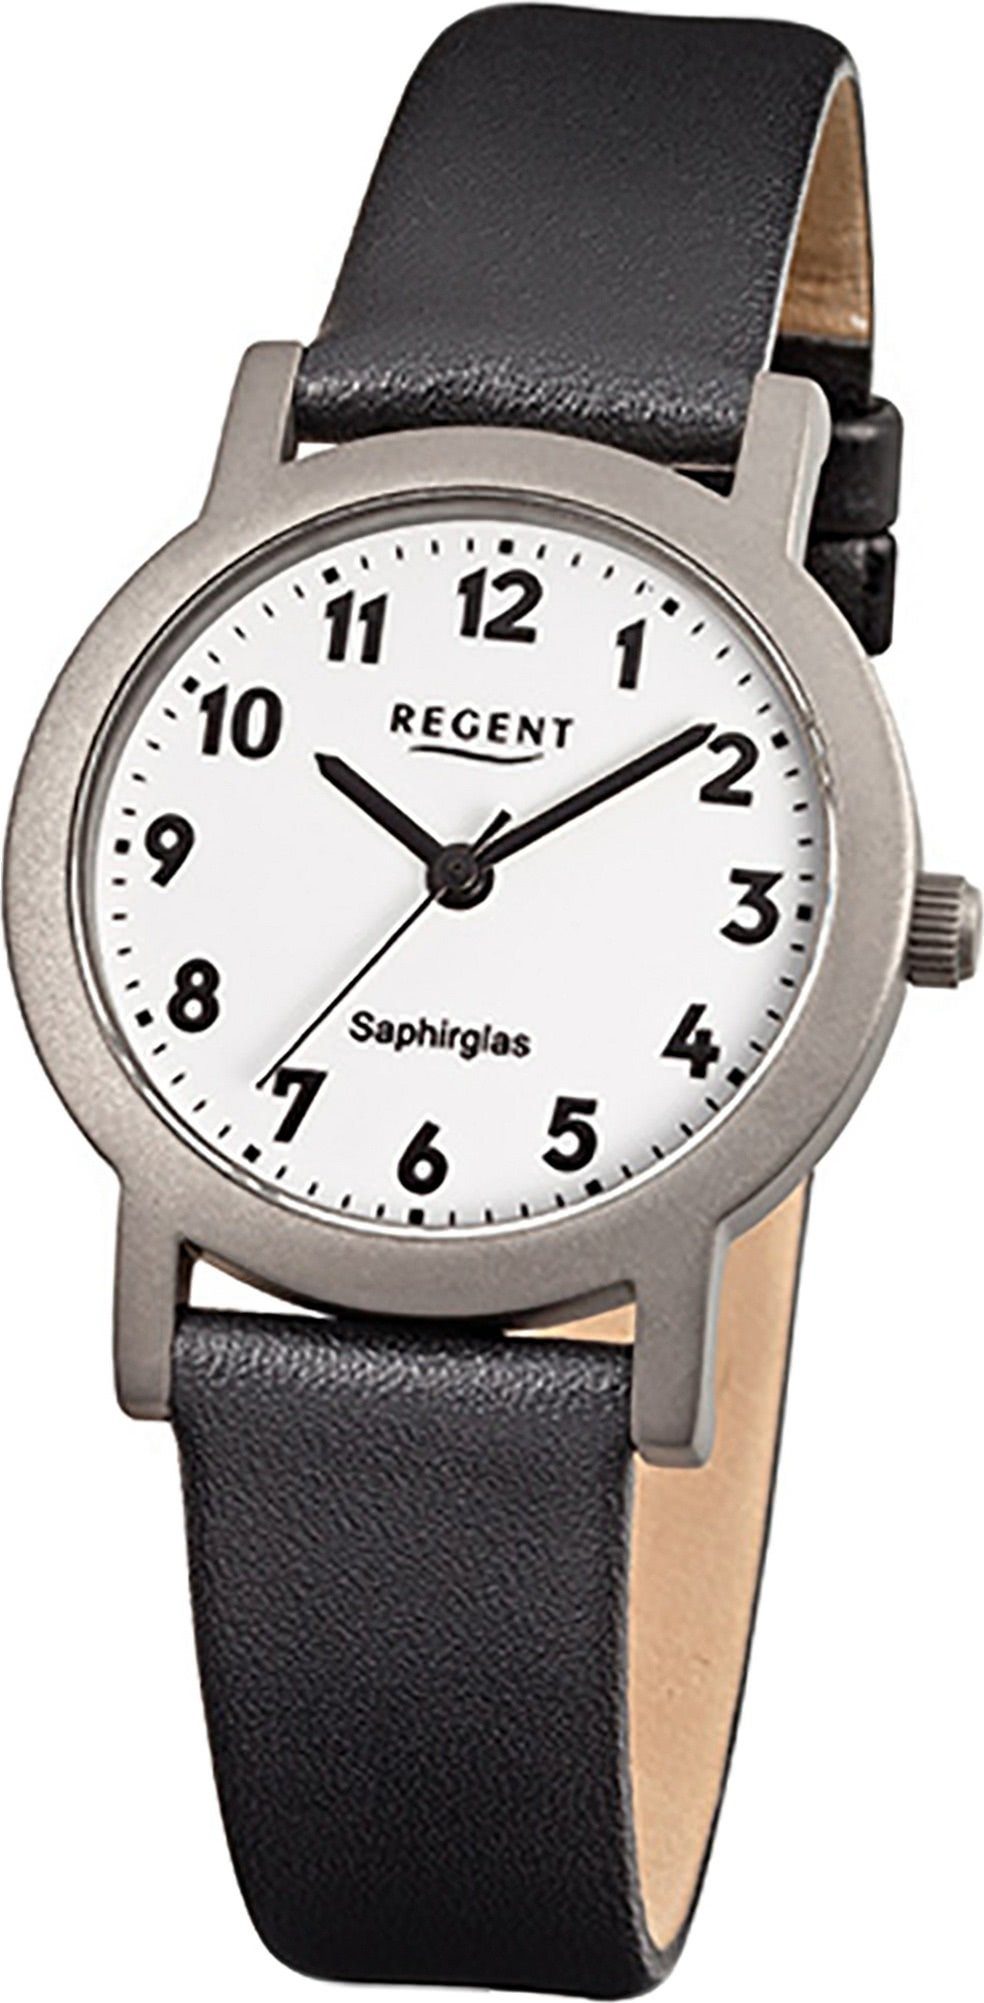 Uhr rundes Gehäuse, Regent klein Damenuhr (ca. Quarzuhr, Lederarmband Leder schwarz, Quarzuhr F-663 Damen 28mm) Regent